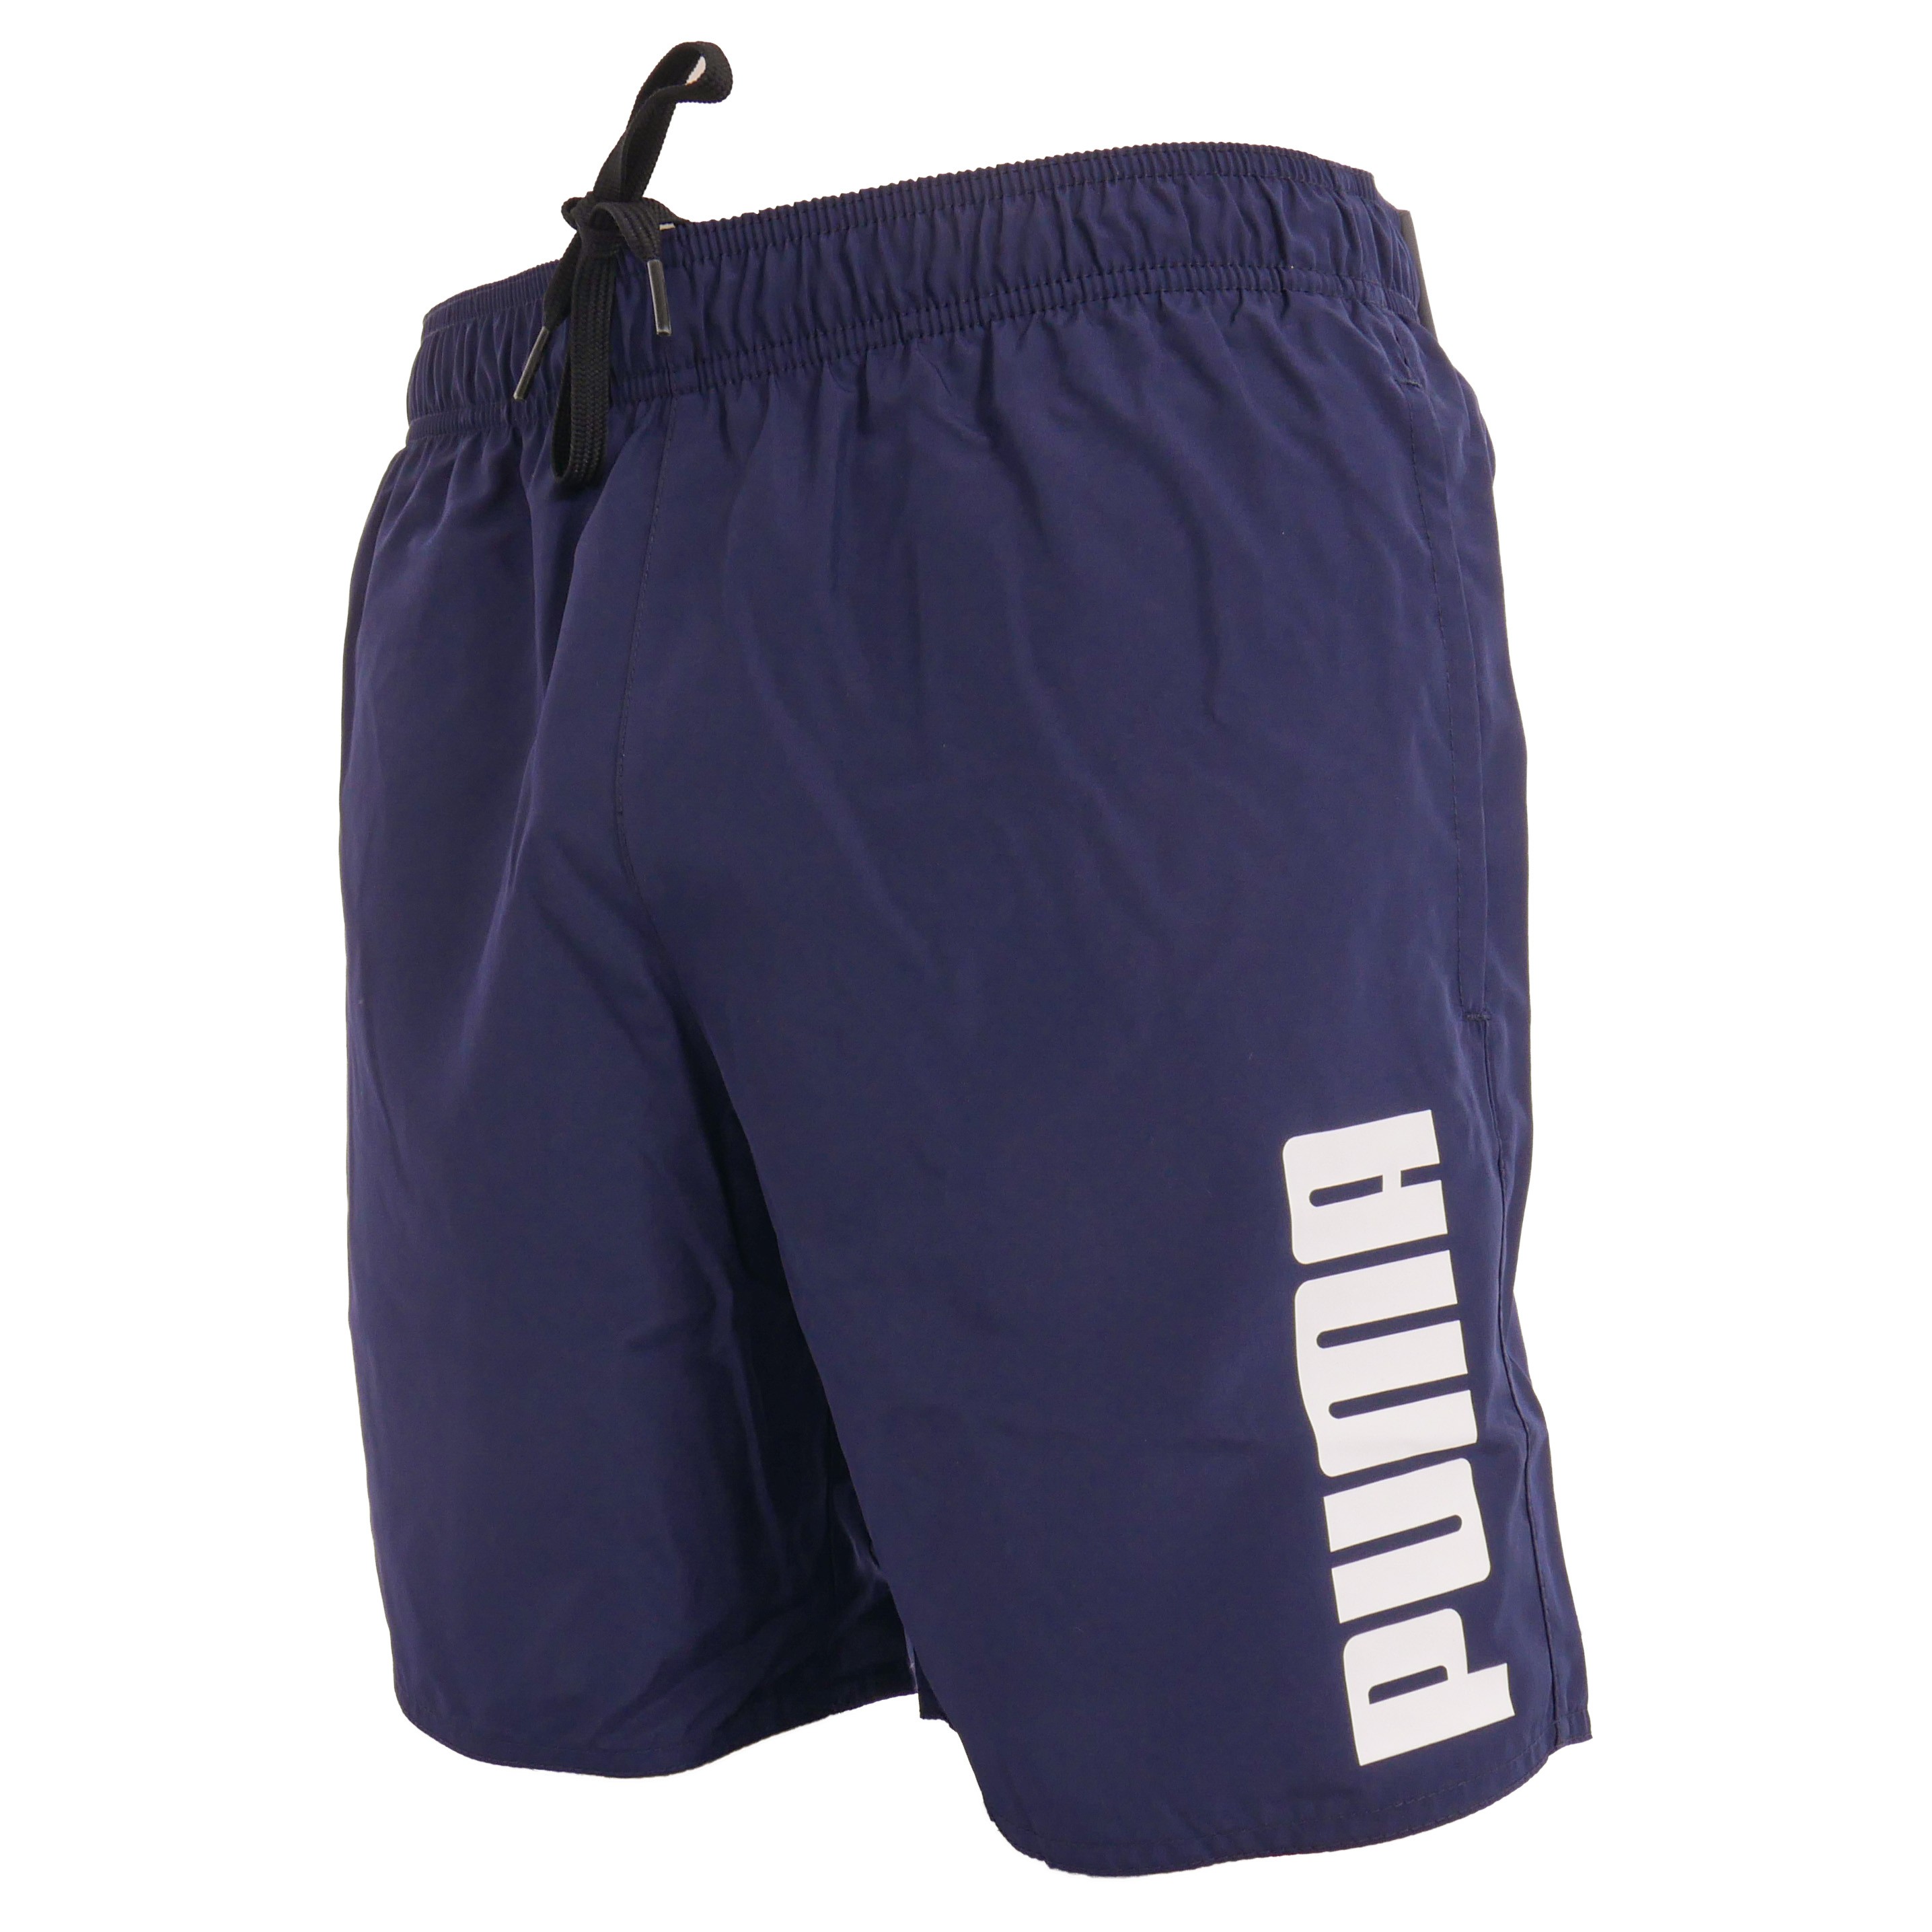 صور مهر PUMA - marine swim shorts: Swim shorts for man brand Puma for sale ... صور مهر